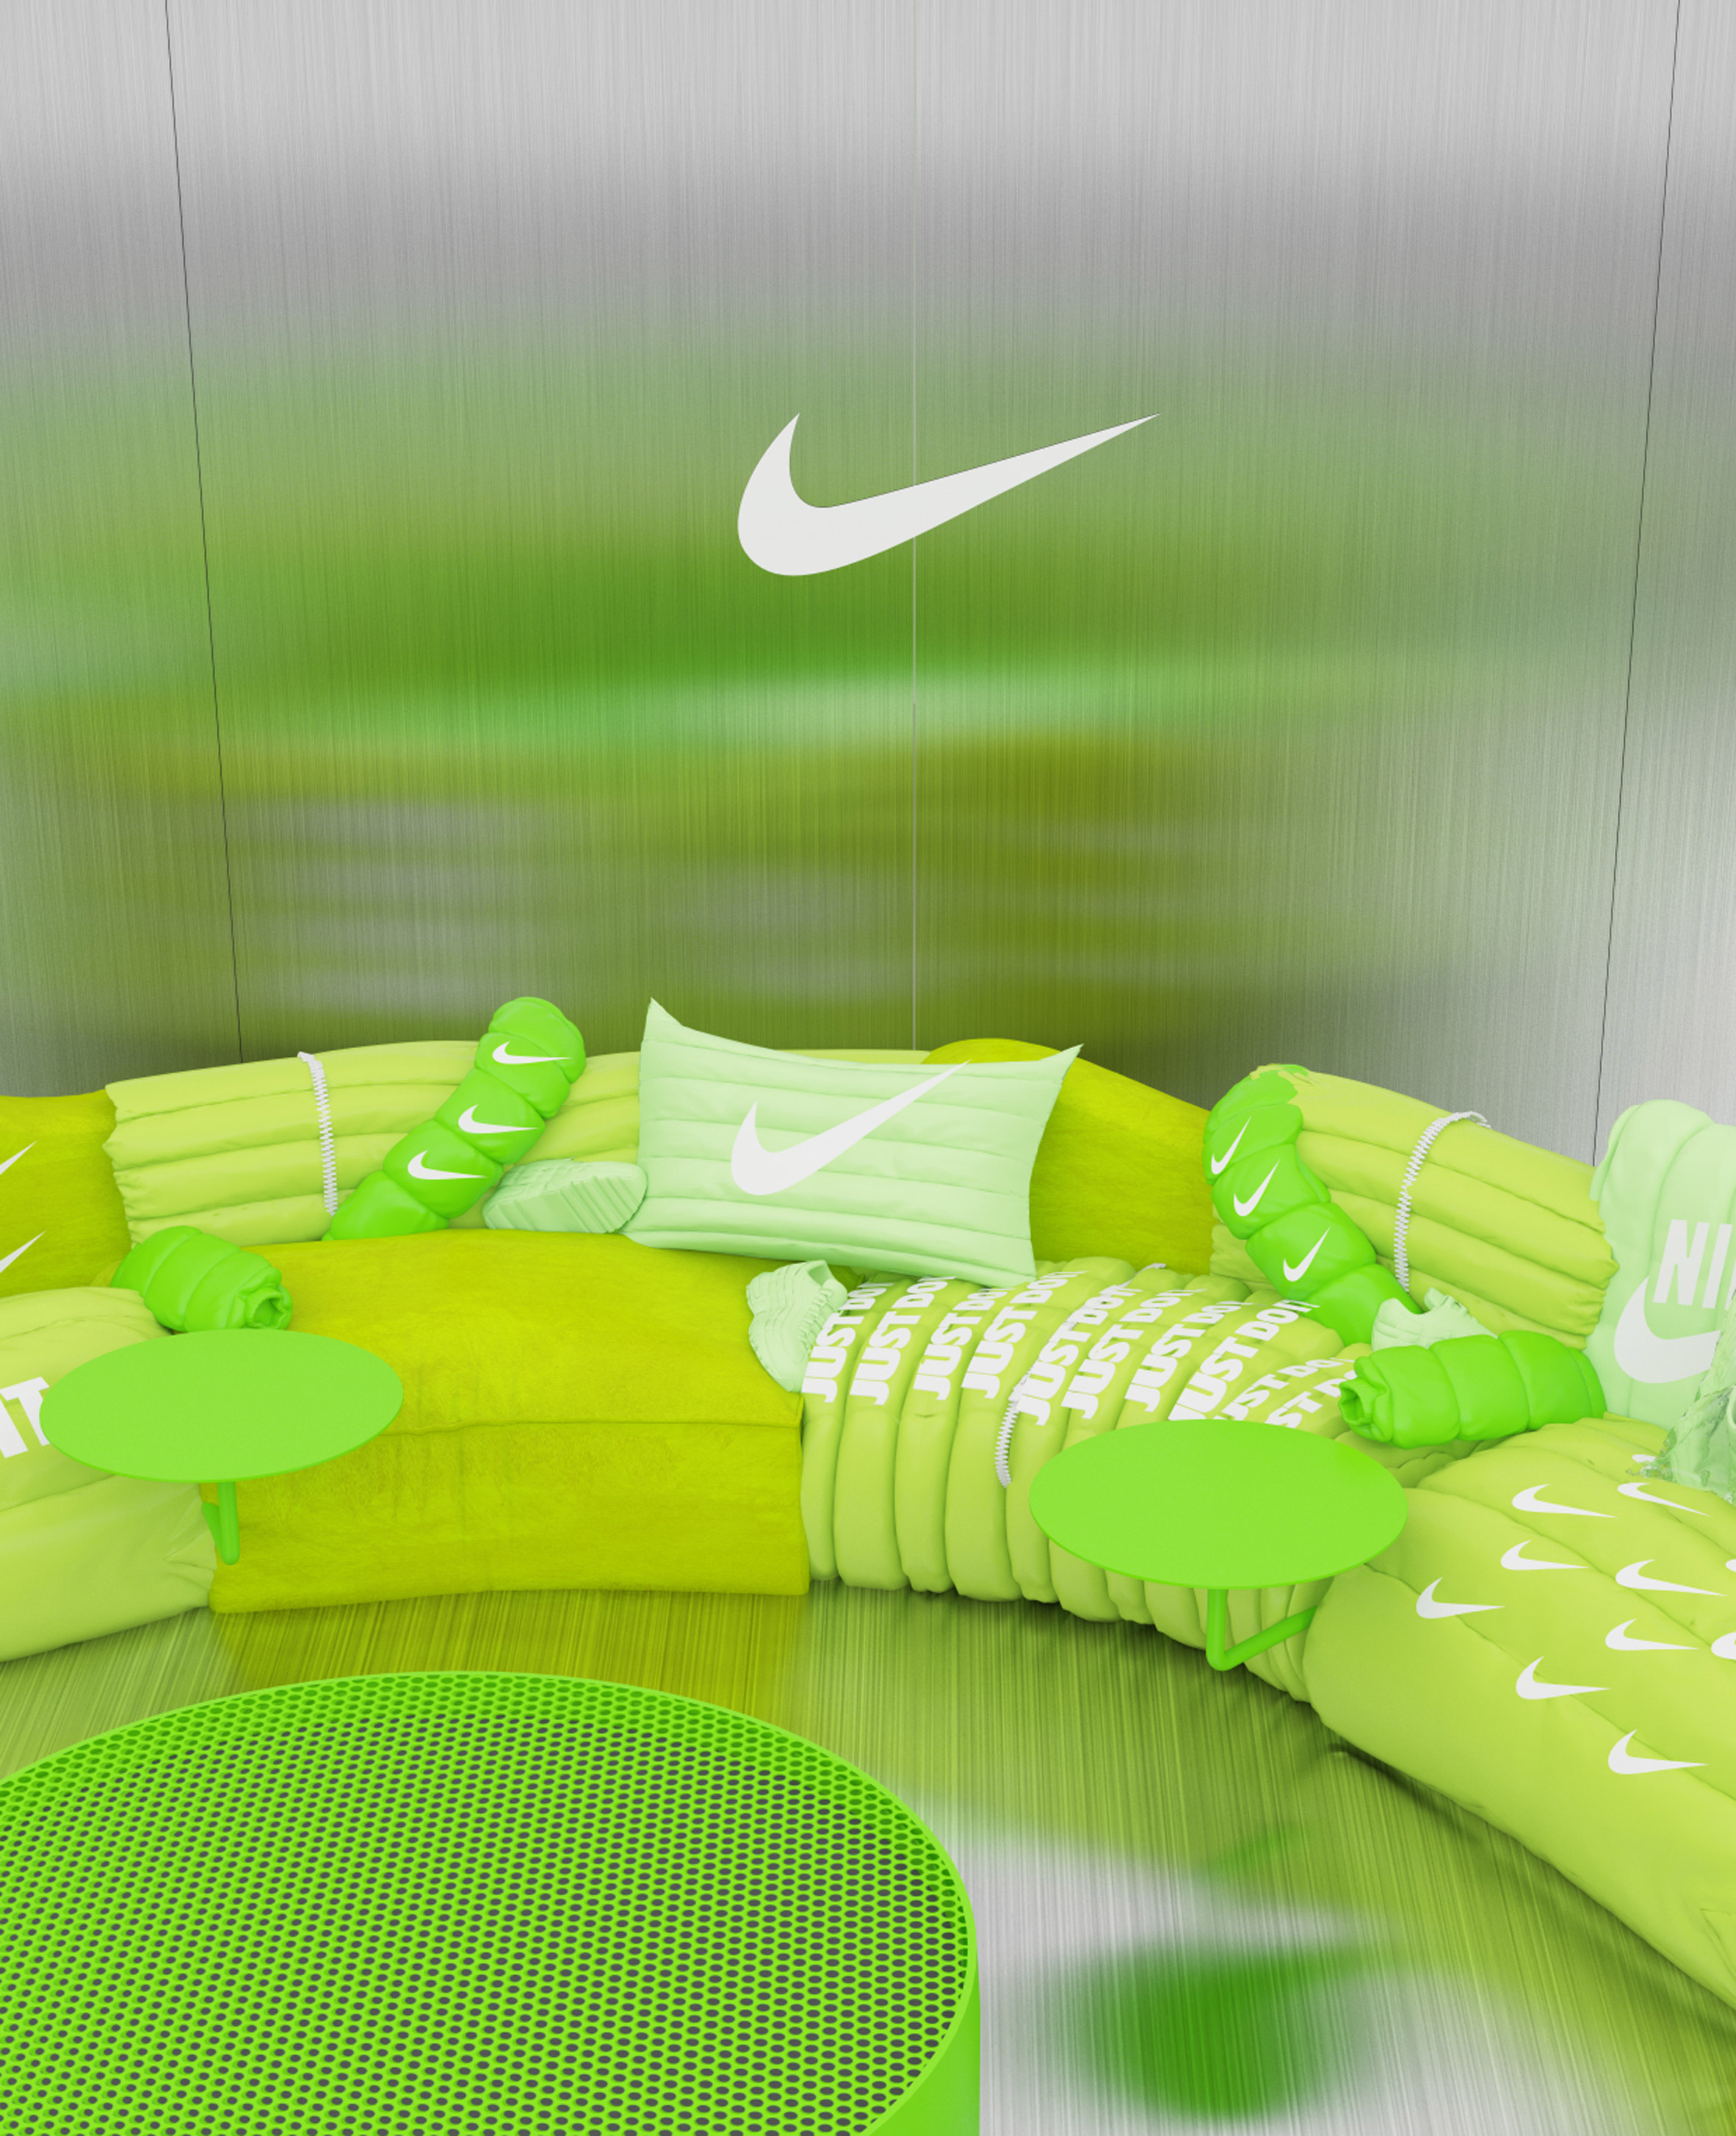 Crosby Studios Designs Virtual Sofa